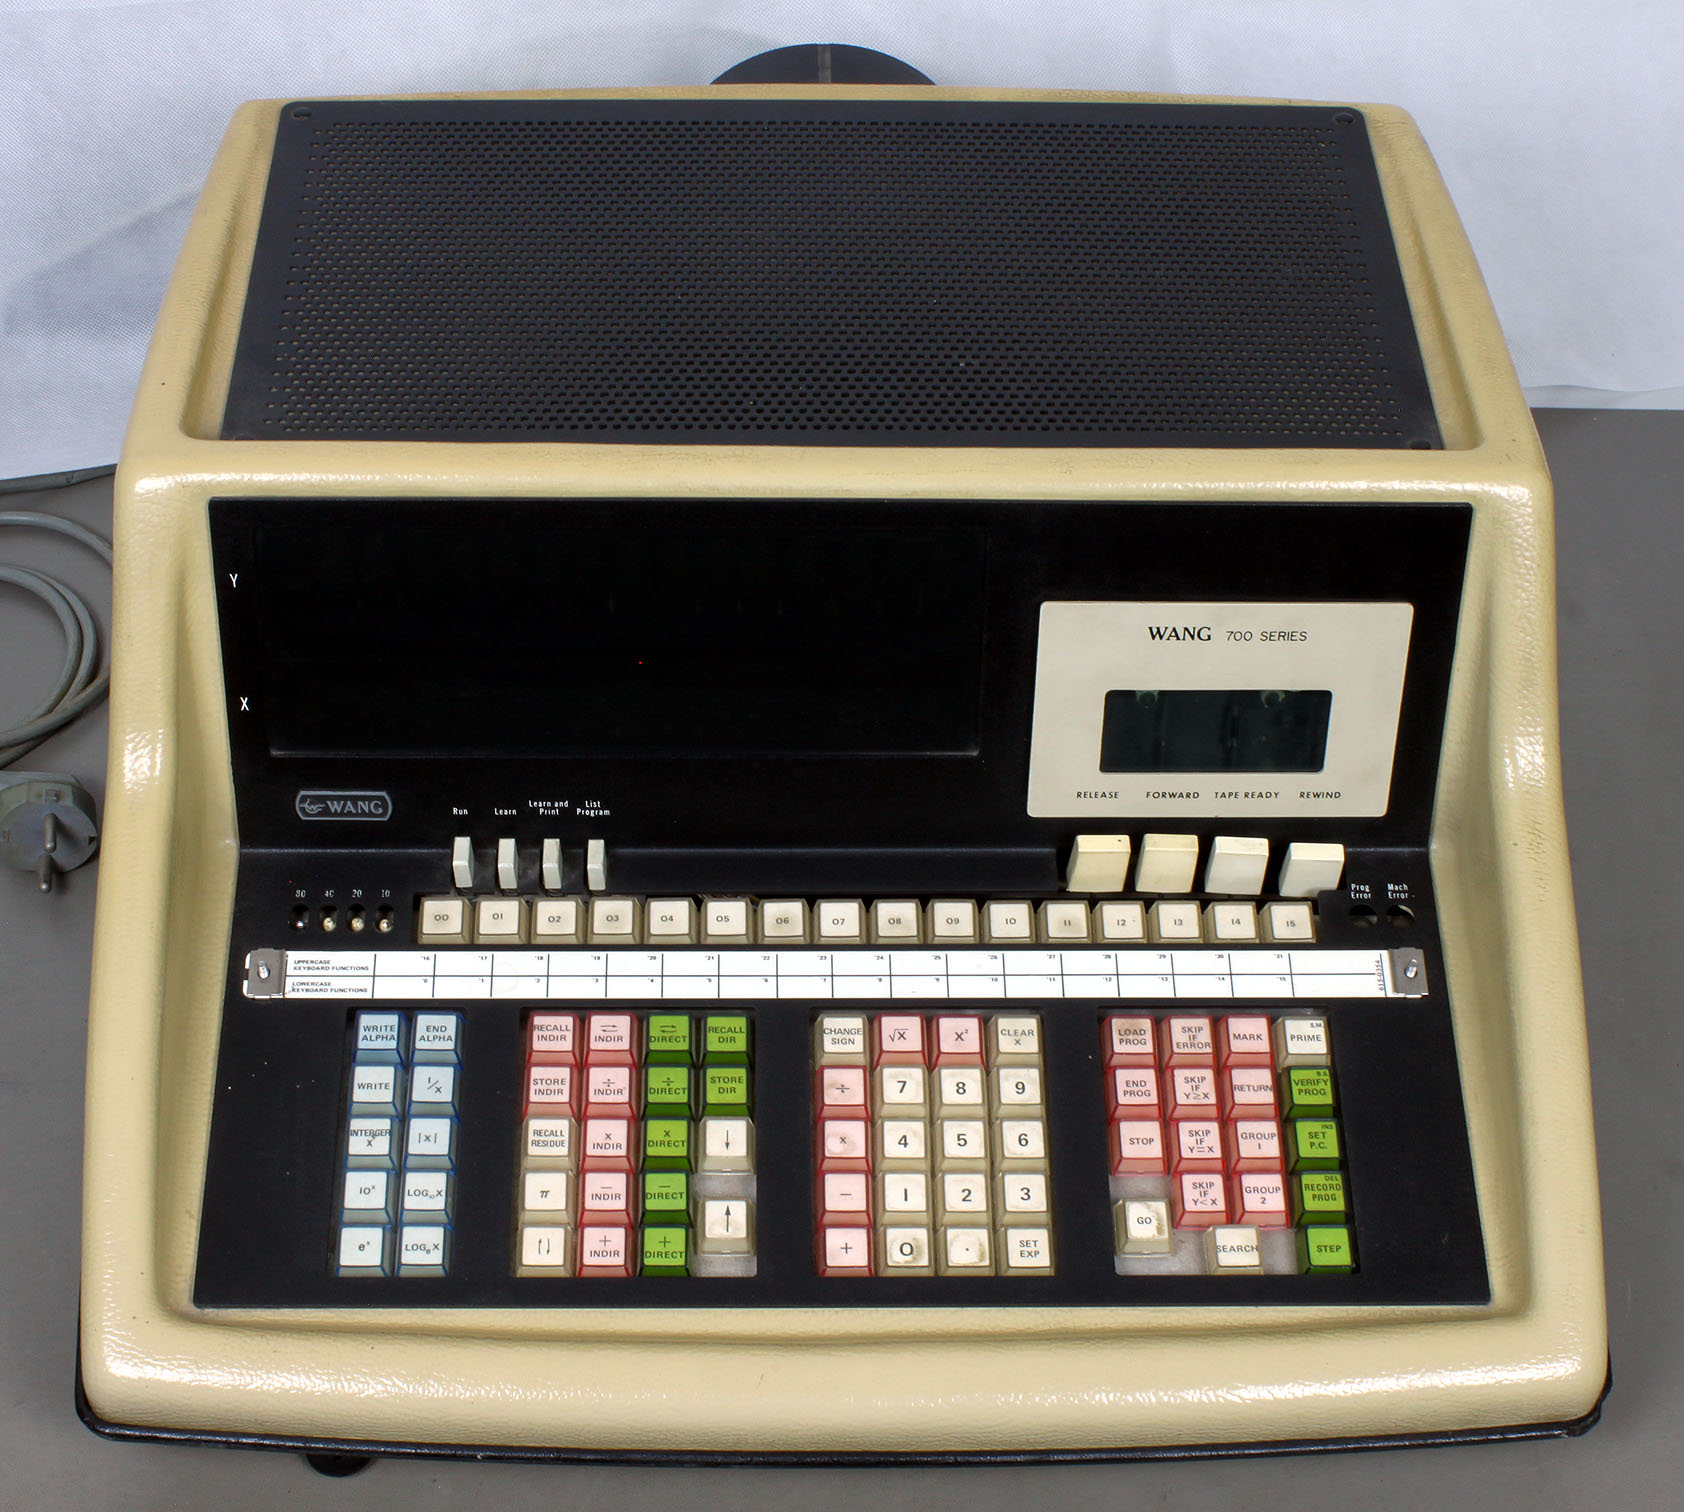 Programmierbarer Tischrechner WANG 700 von ca. 1970-1973